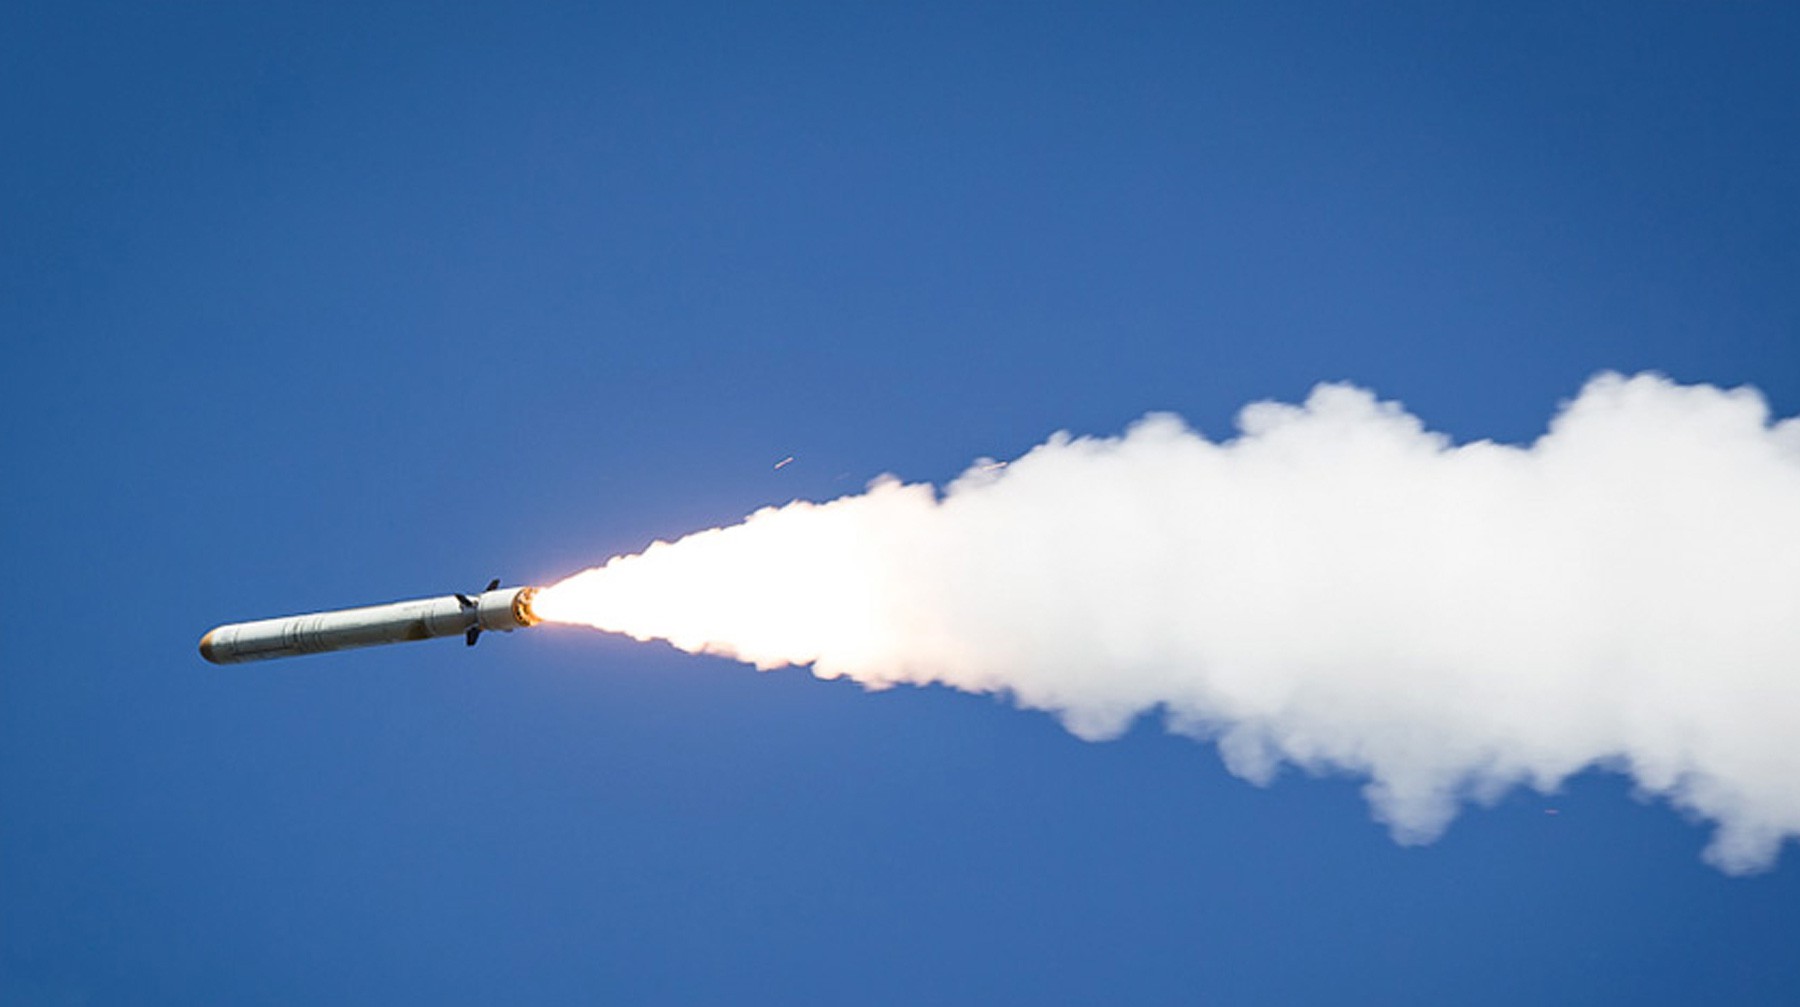 Dailystorm - США передали России данные об испытаниях ракеты 9М729